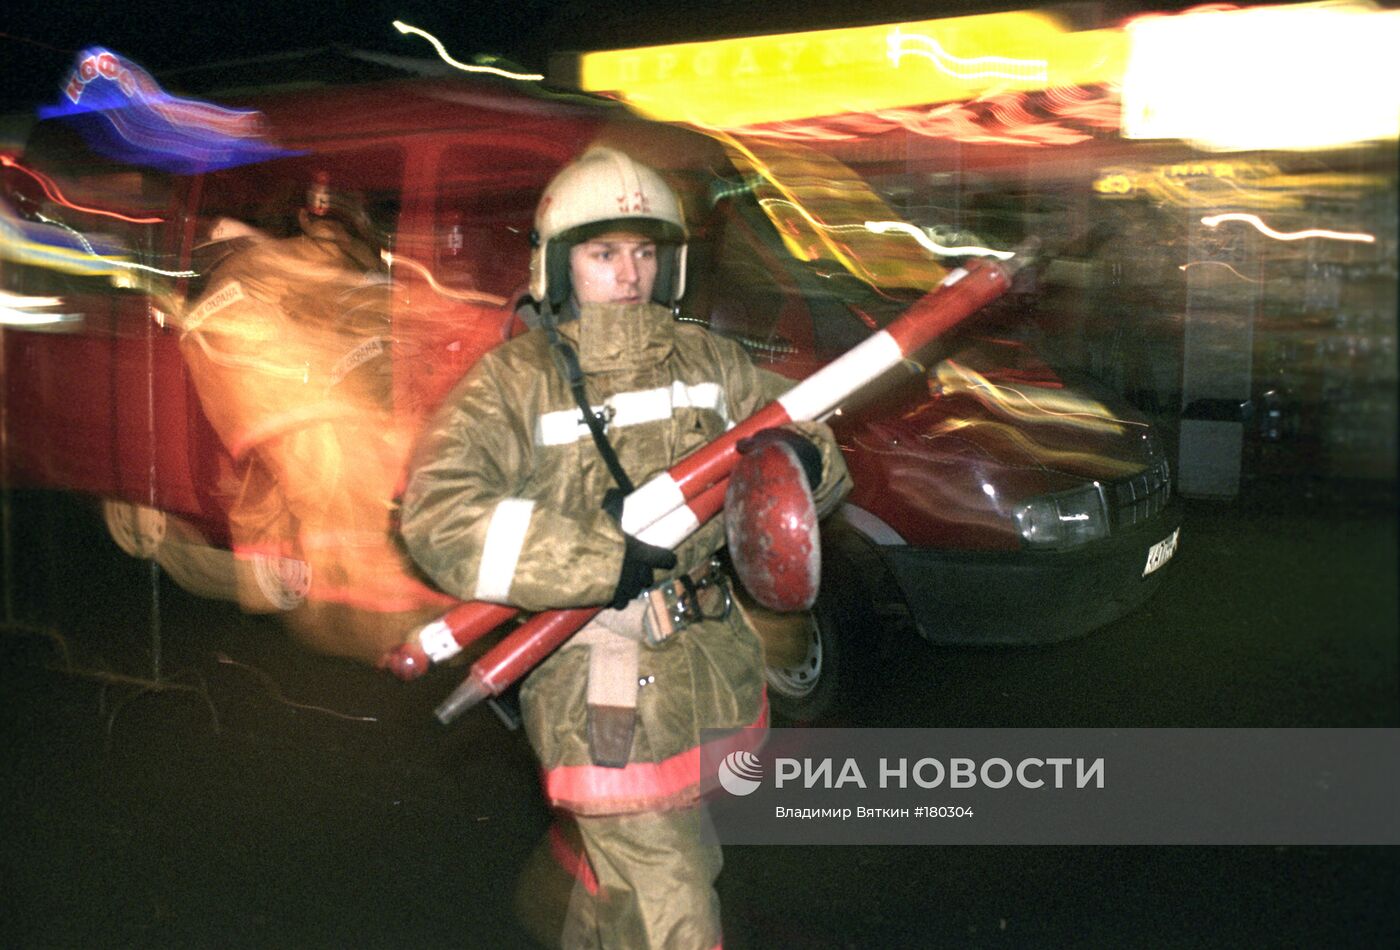 Учения пожарных подразделений на станции метро "Шаболовская"